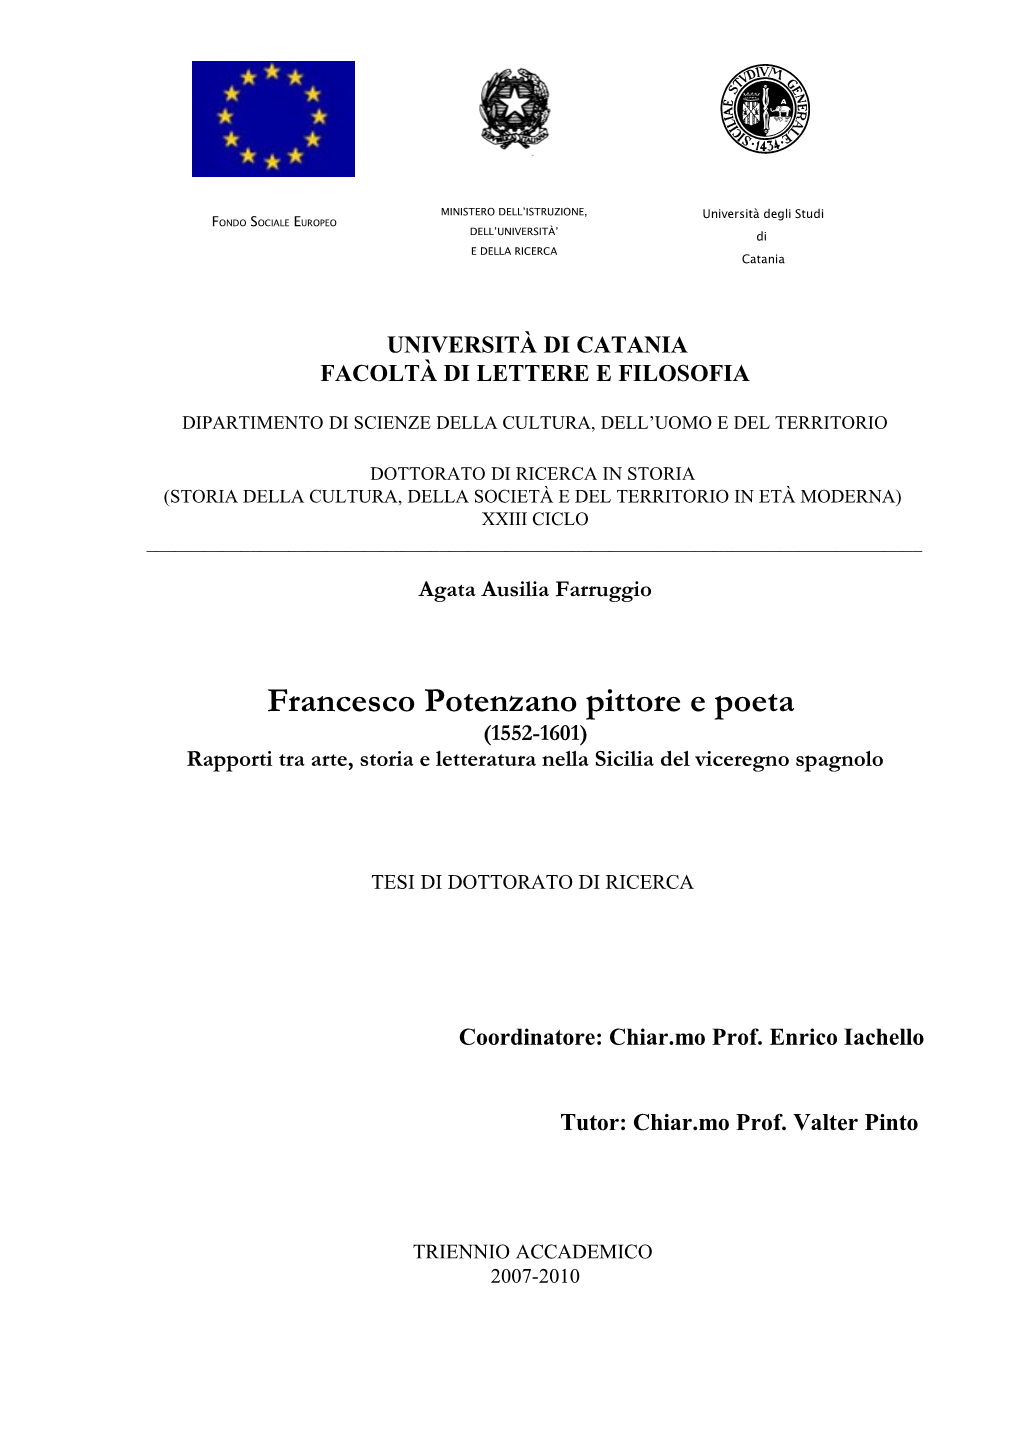 Francesco Potenzano Pittore E Poeta (1552-1601) Rapporti Tra Arte, Storia E Letteratura Nella Sicilia Del Viceregno Spagnolo